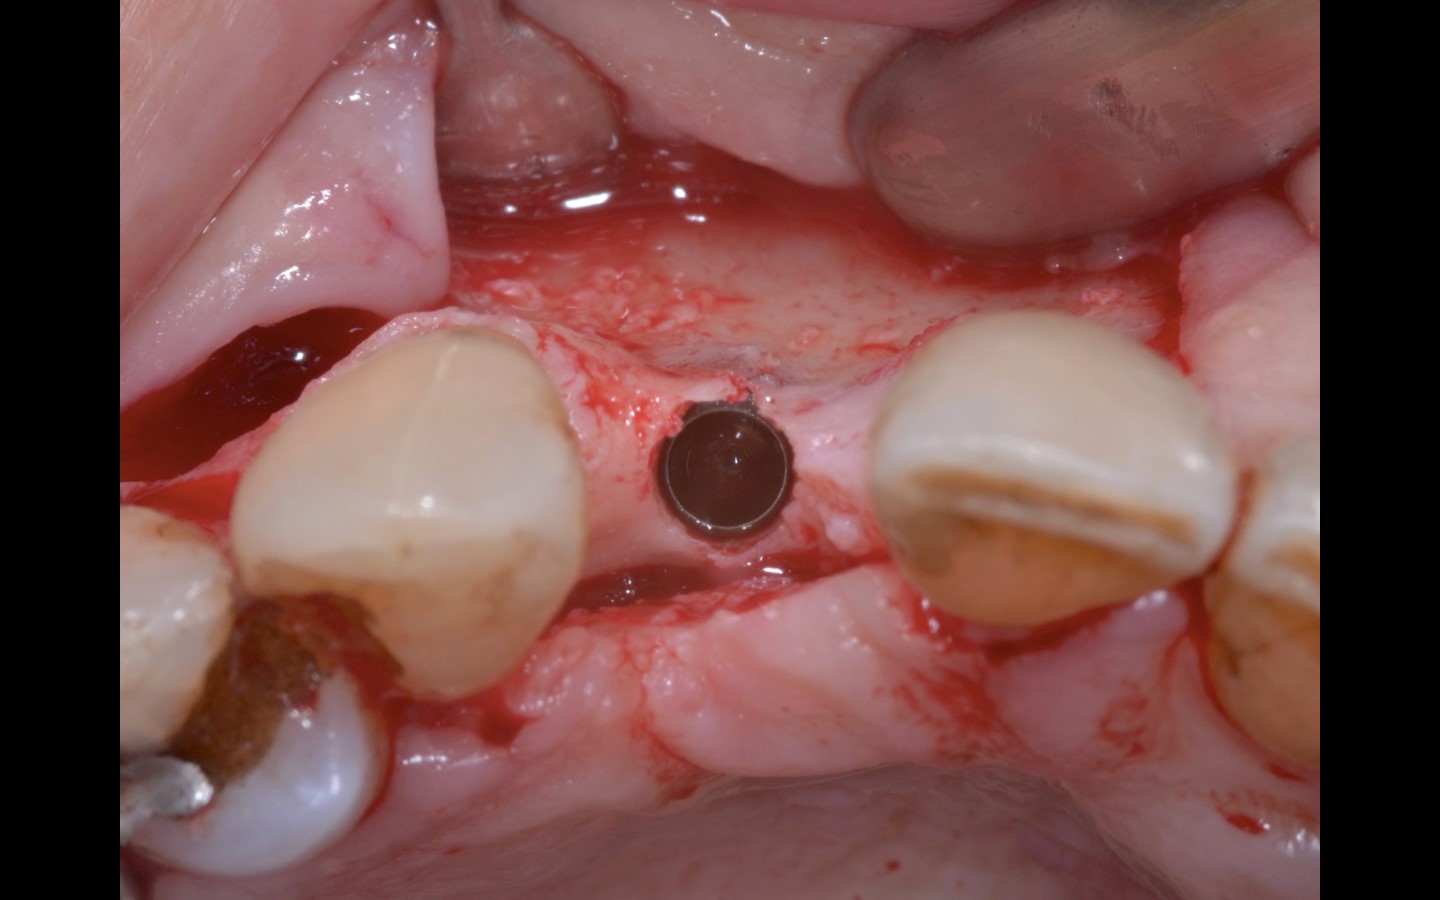 image7 - Reabilitação dento-alveolar com implante Arcsys, enxerto conjuntivo e substituto ósseo Nanosynt